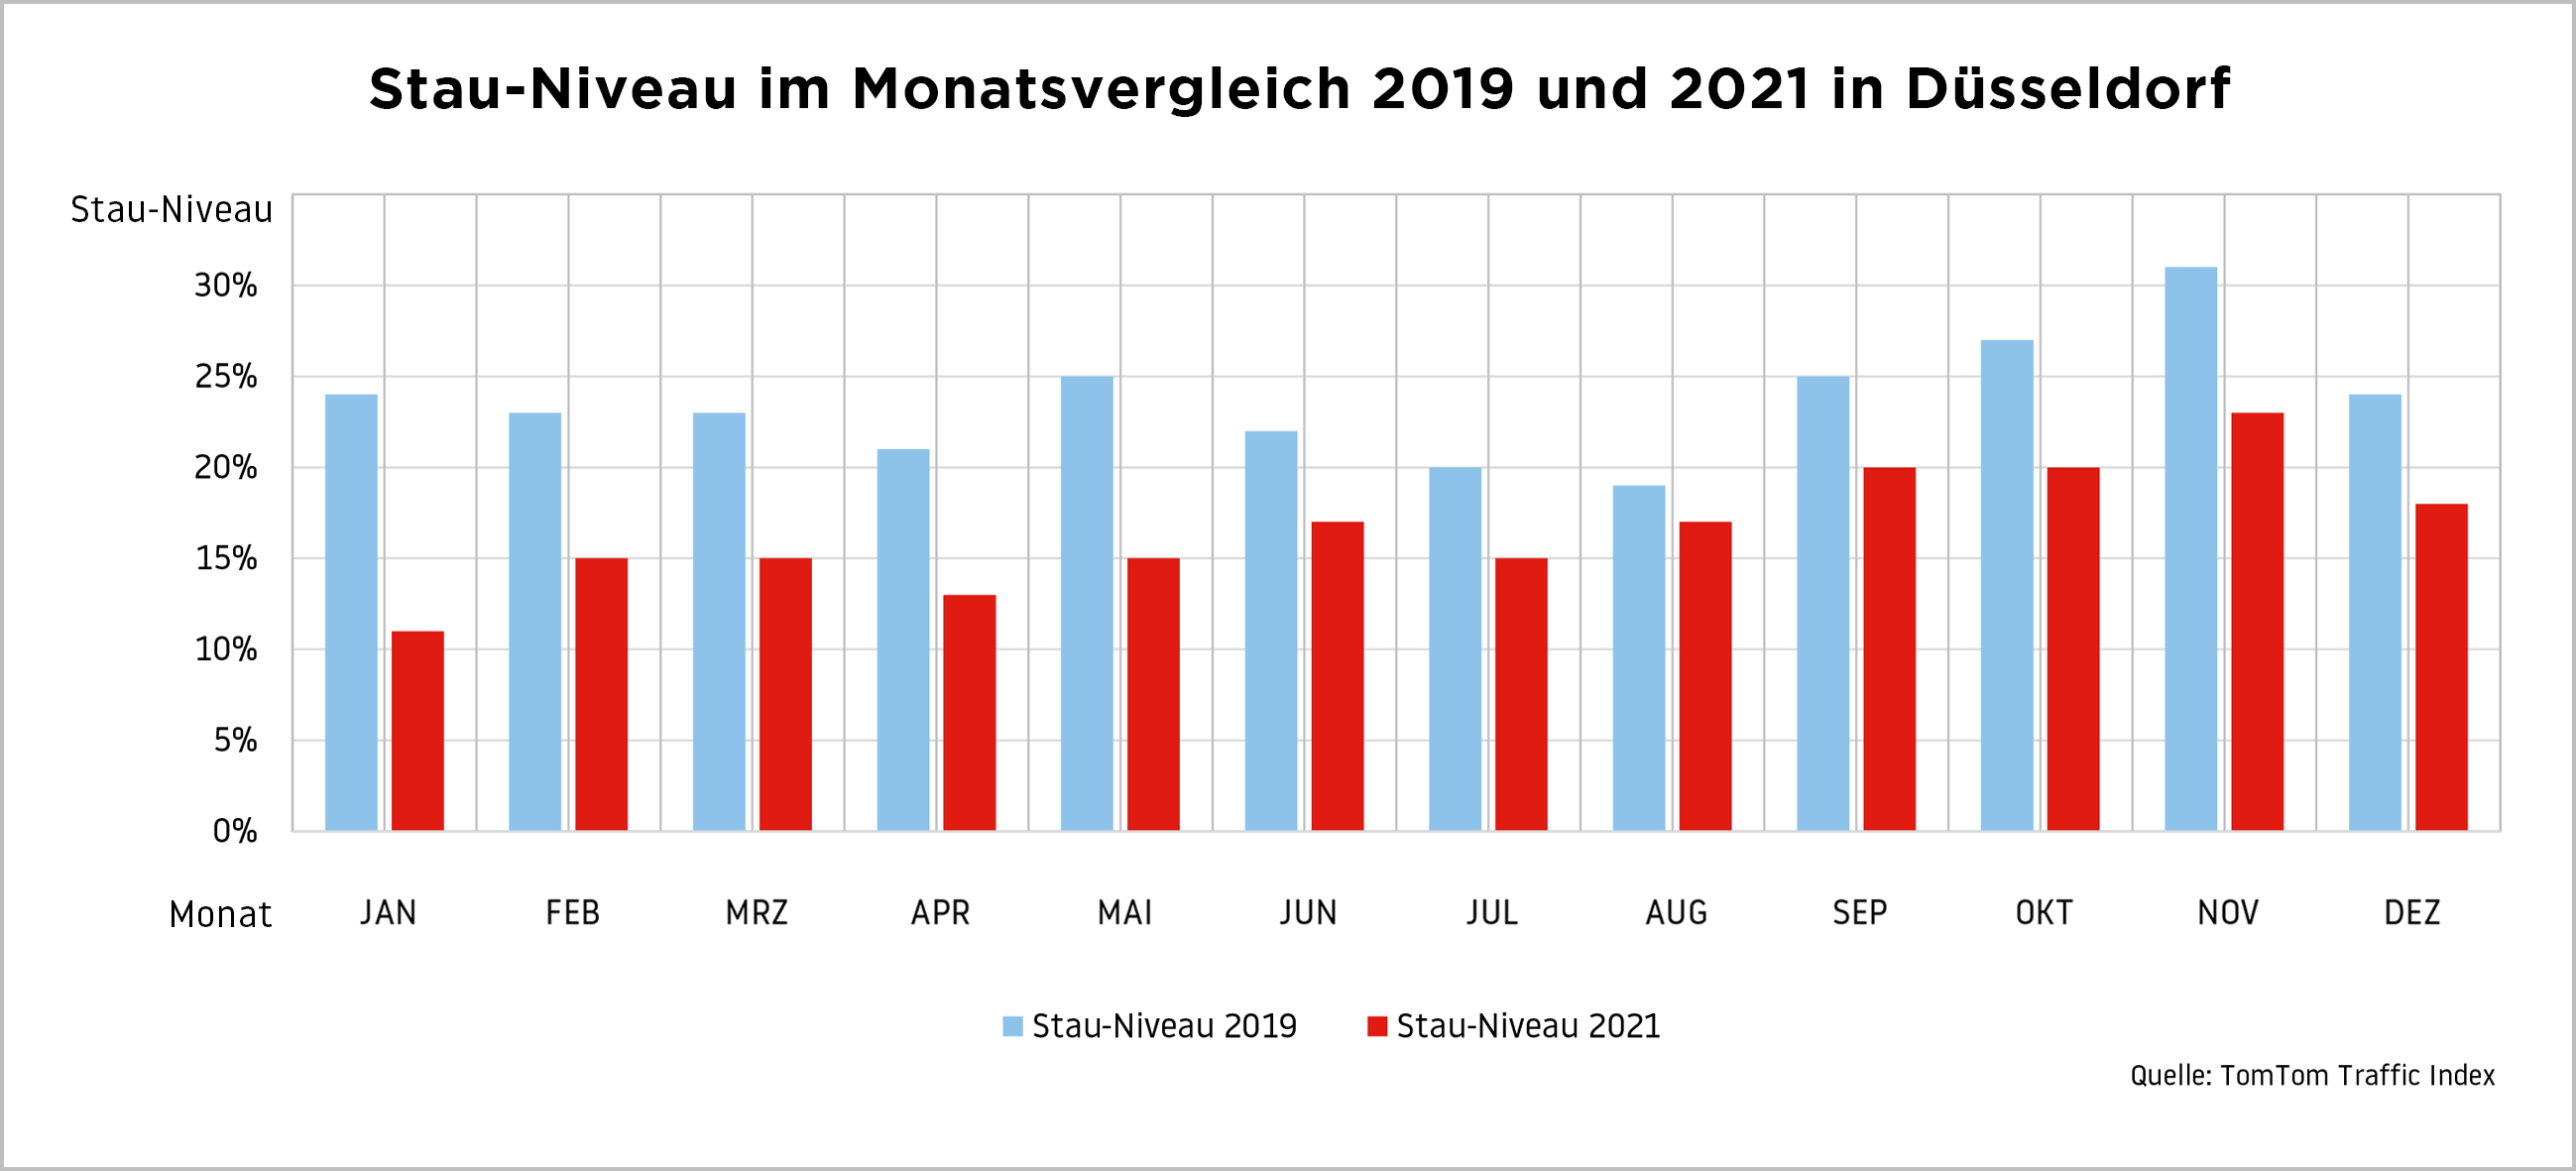 In keinem Monat übersteigt das Stau-Niveau in Düsseldorf in 2021 die Werte aus 2019 – doch in der zweiten Jahreshälfte wird der Unterschied kleiner ©TomTom